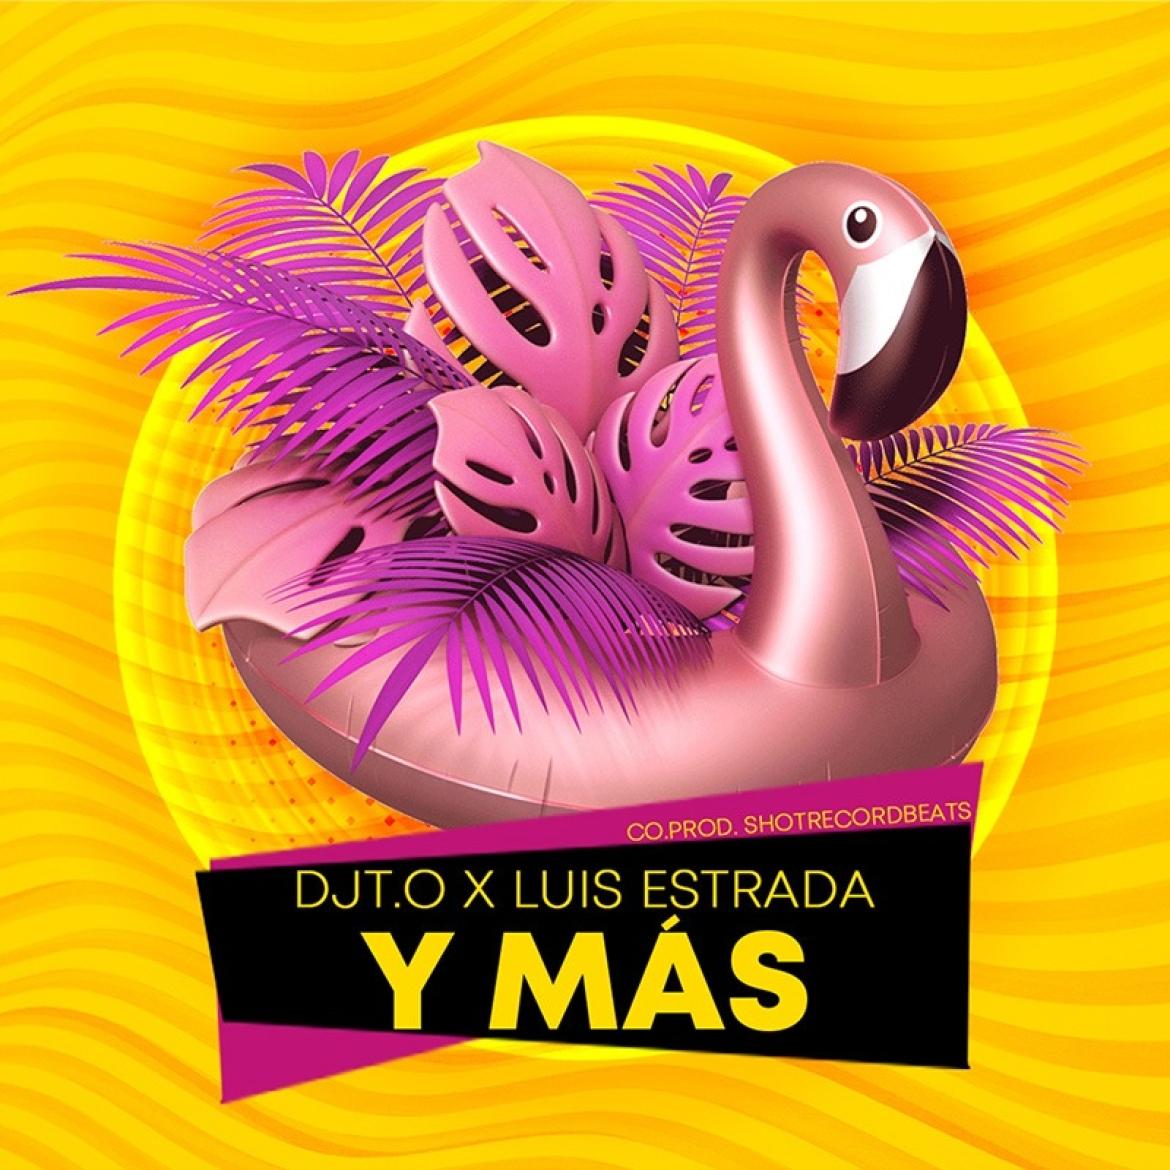 DJT.O Luis Estrada Y Mas Latin Pop Single 2021